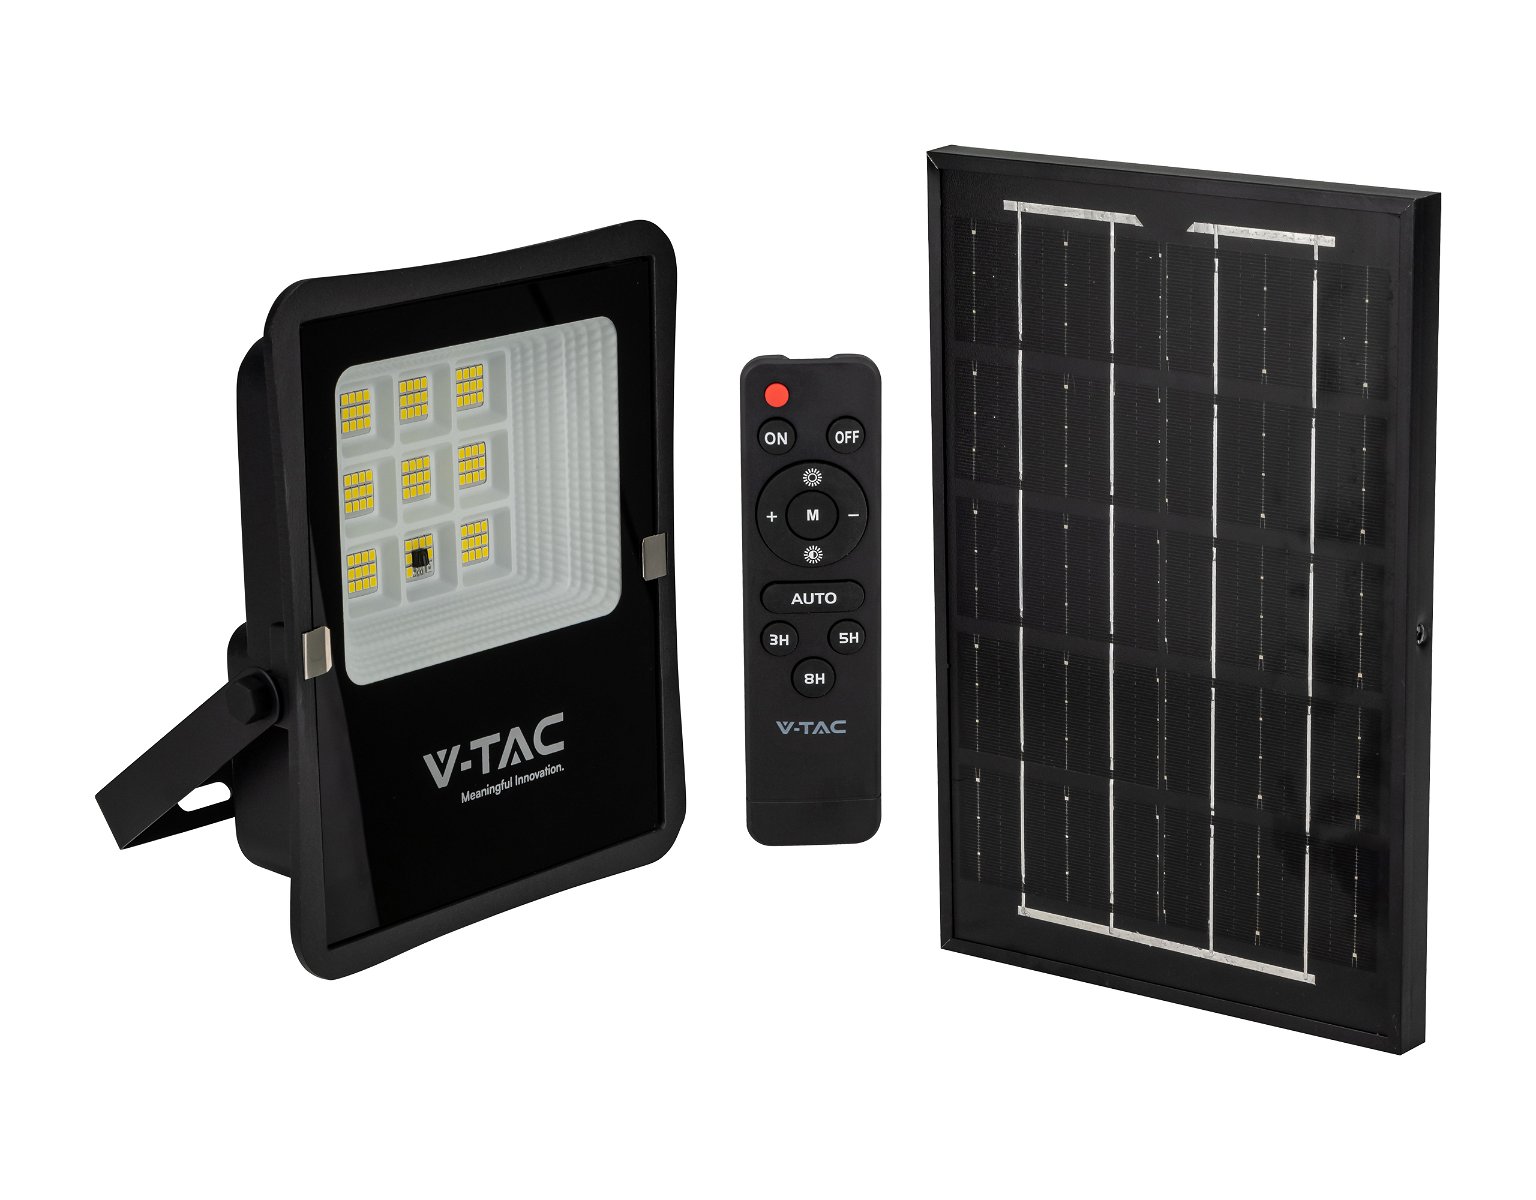 LED prožektorius V -TAC, įkraunamas saulės energija, IP65, 4000 K, 400 lm, su pultu, juodos spalvos